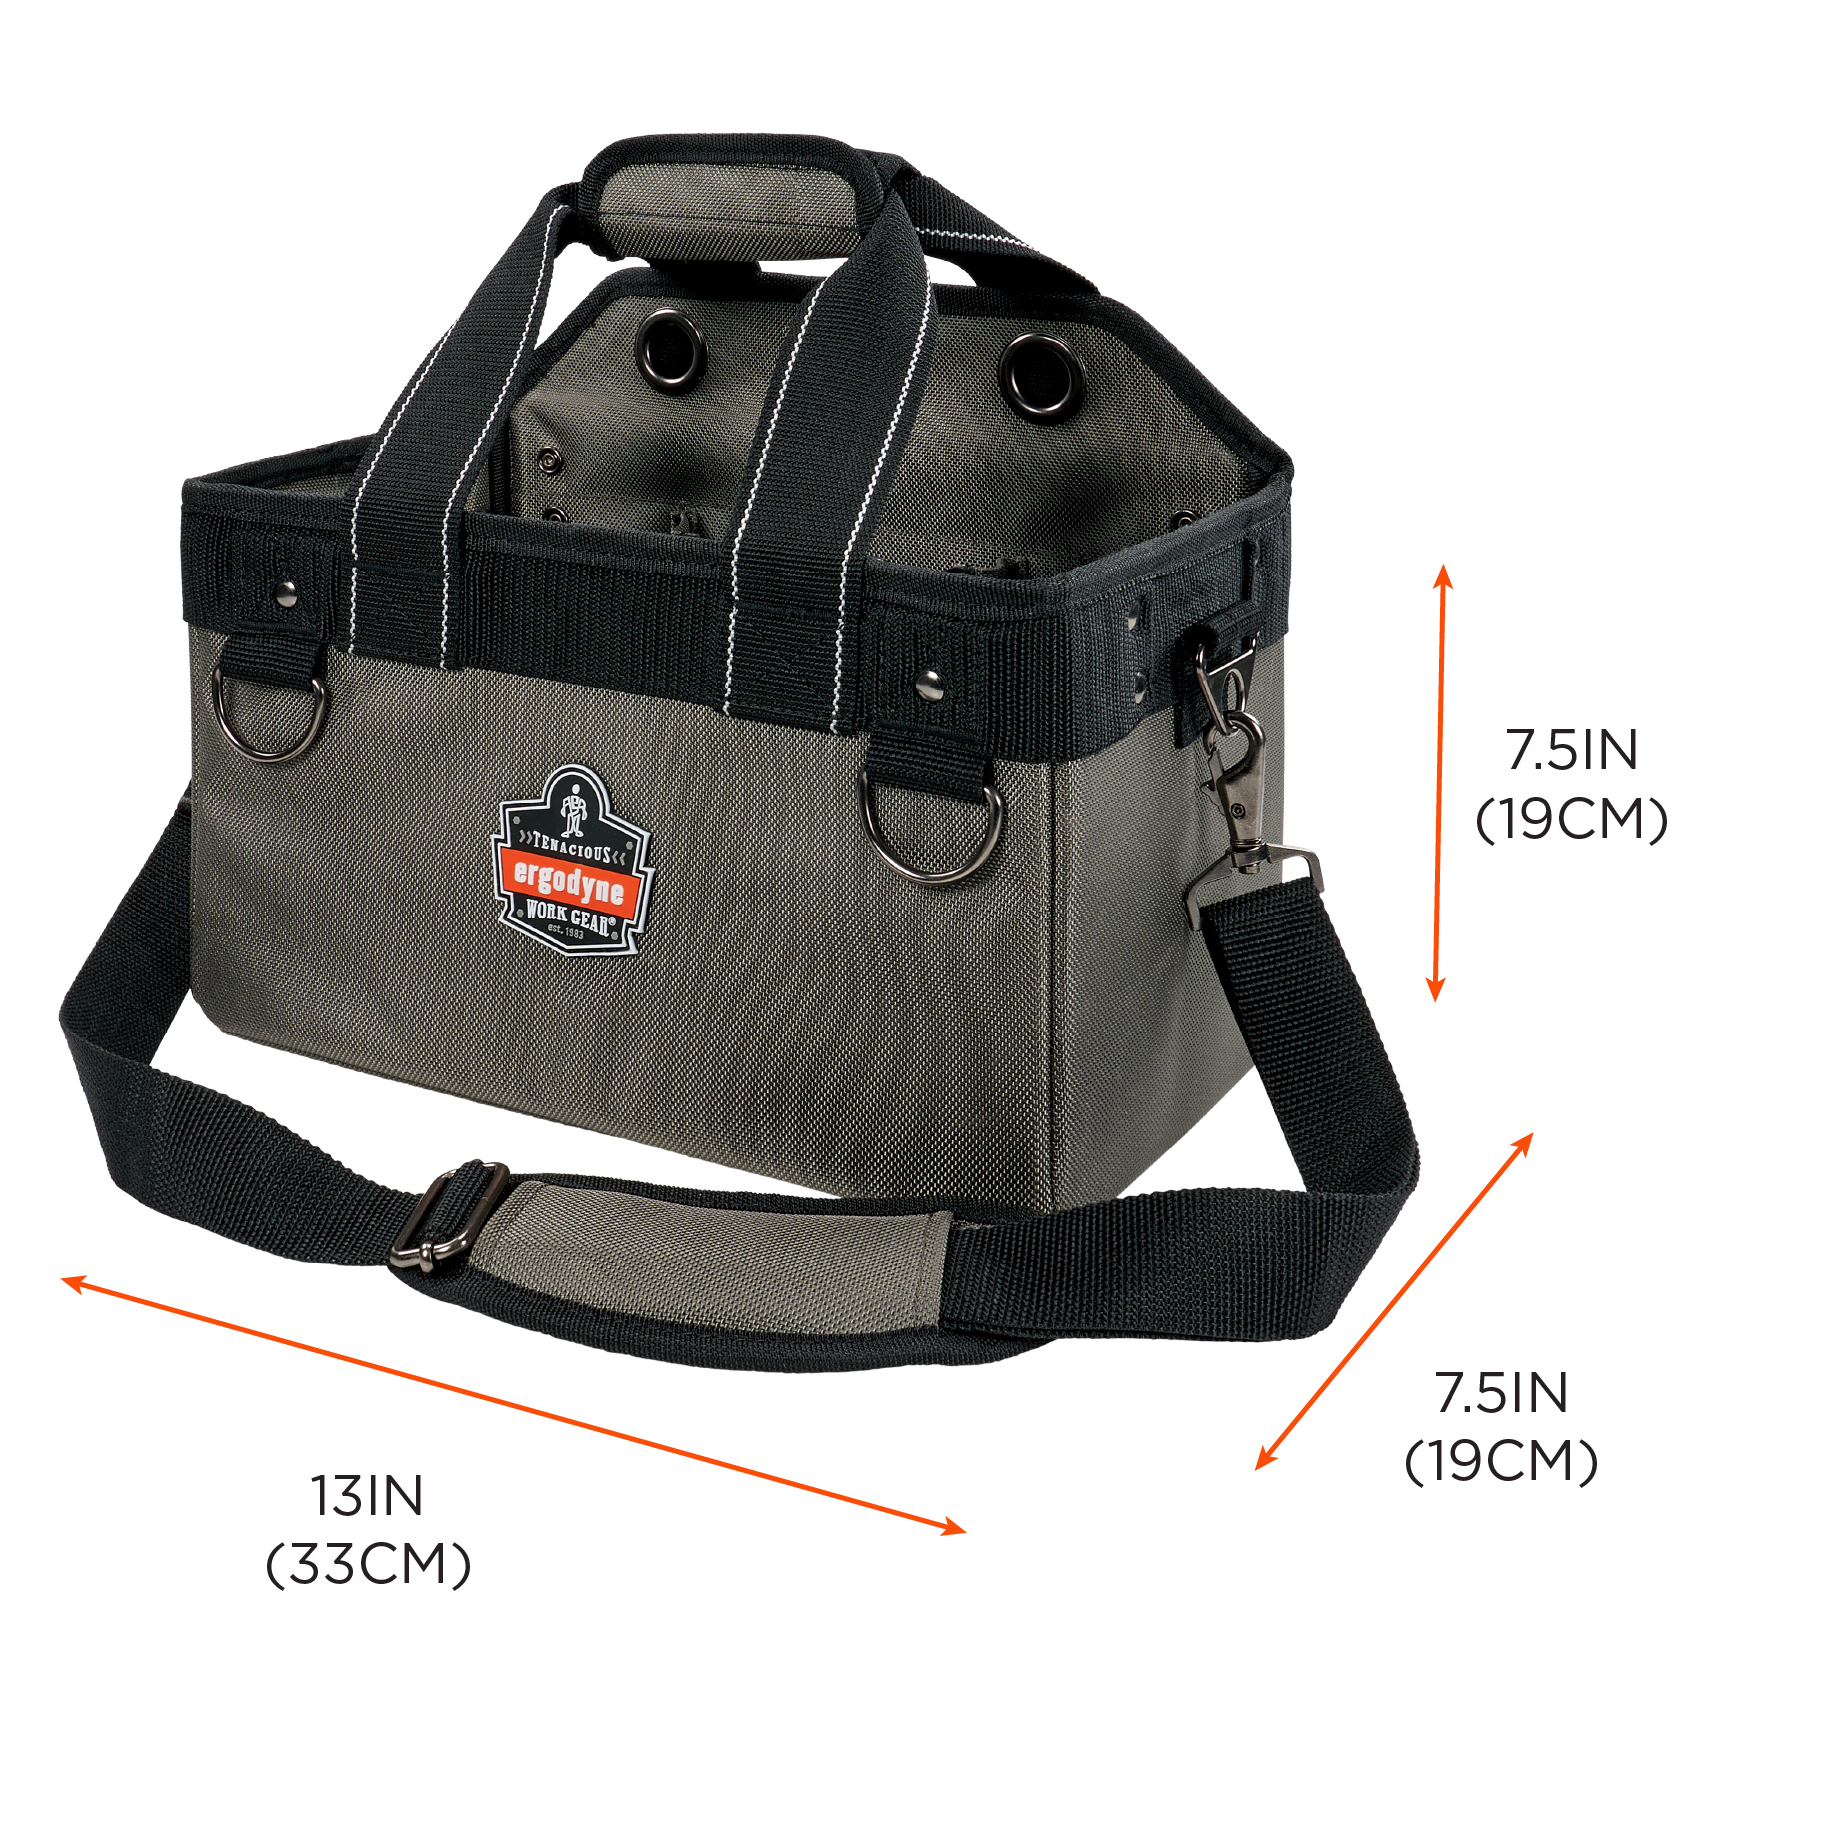 Tool Bag - Bag for carrying tools KONG